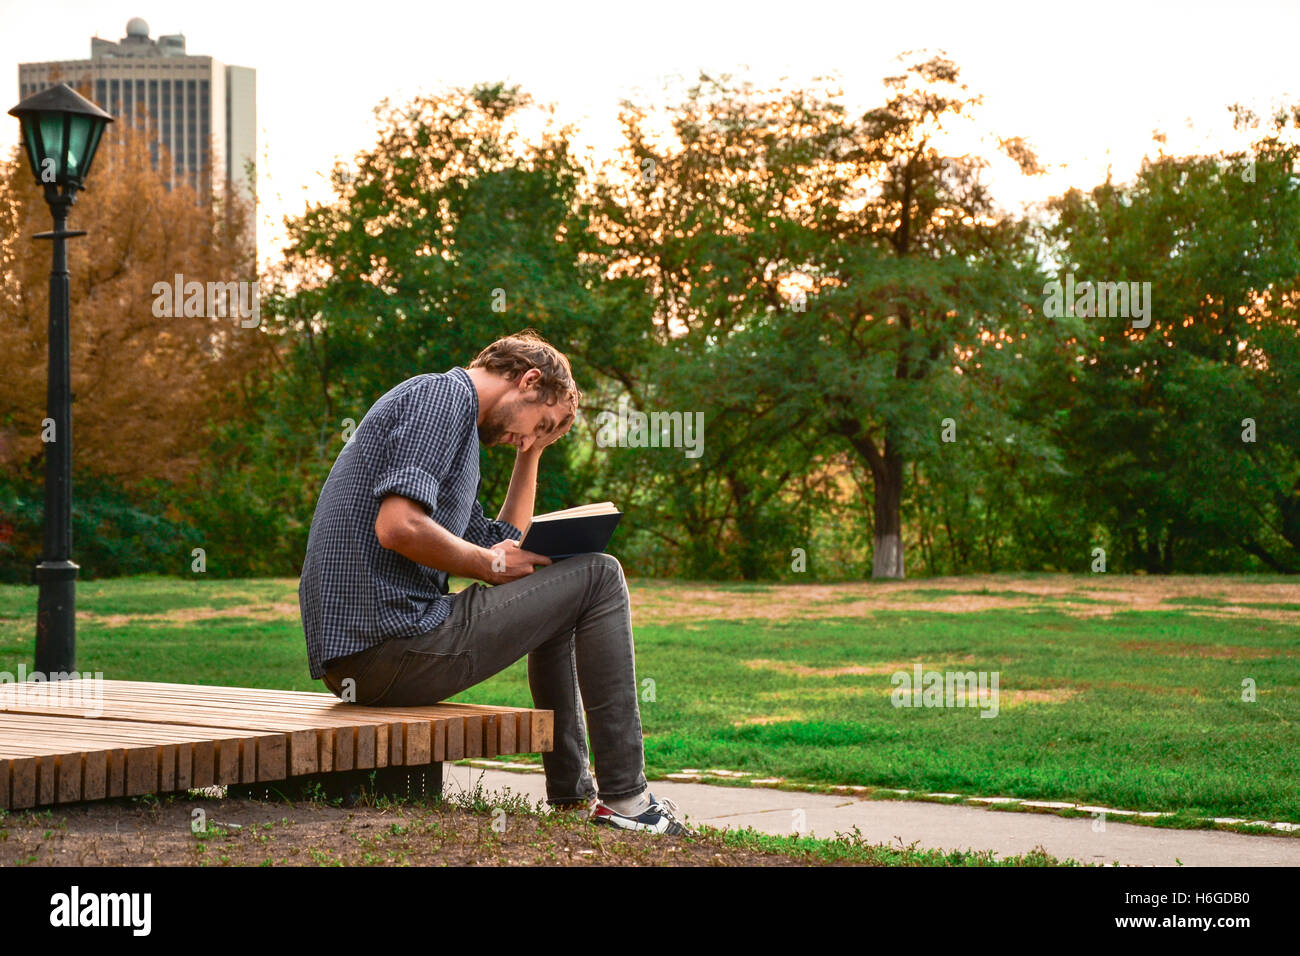 Mann sitzt auf einer Bank im Park Buch Stockfoto